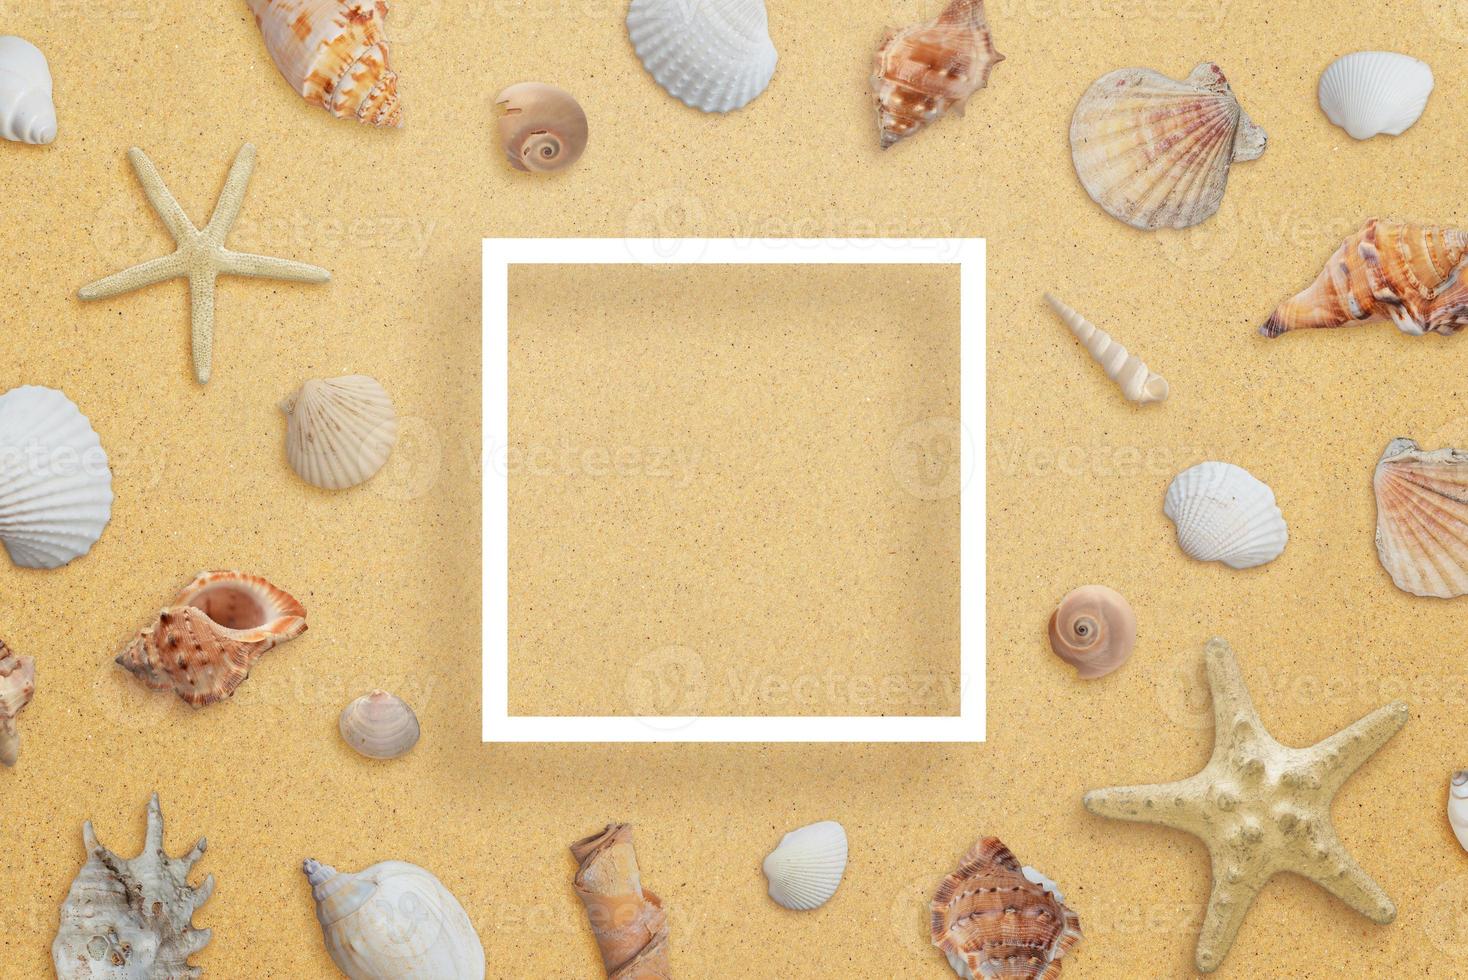 moldura quadrada de papel branco na praia cercada por conchas do mar. composição criativa com espaço de cópia no meio foto